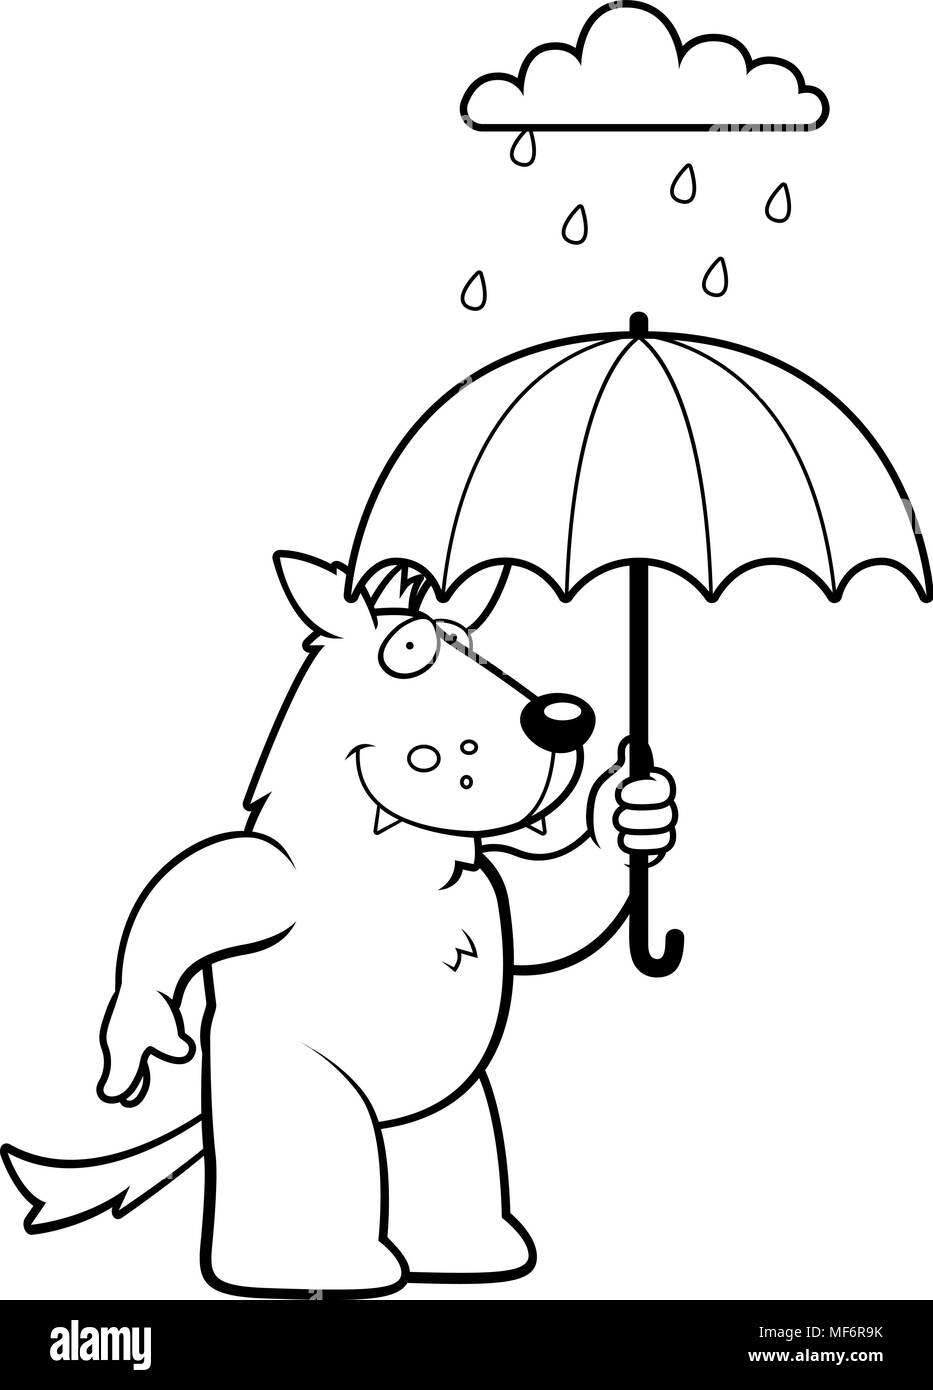 Illustration d'une caricature d'un loup avec un parapluie sous la pluie  Image Vectorielle Stock - Alamy